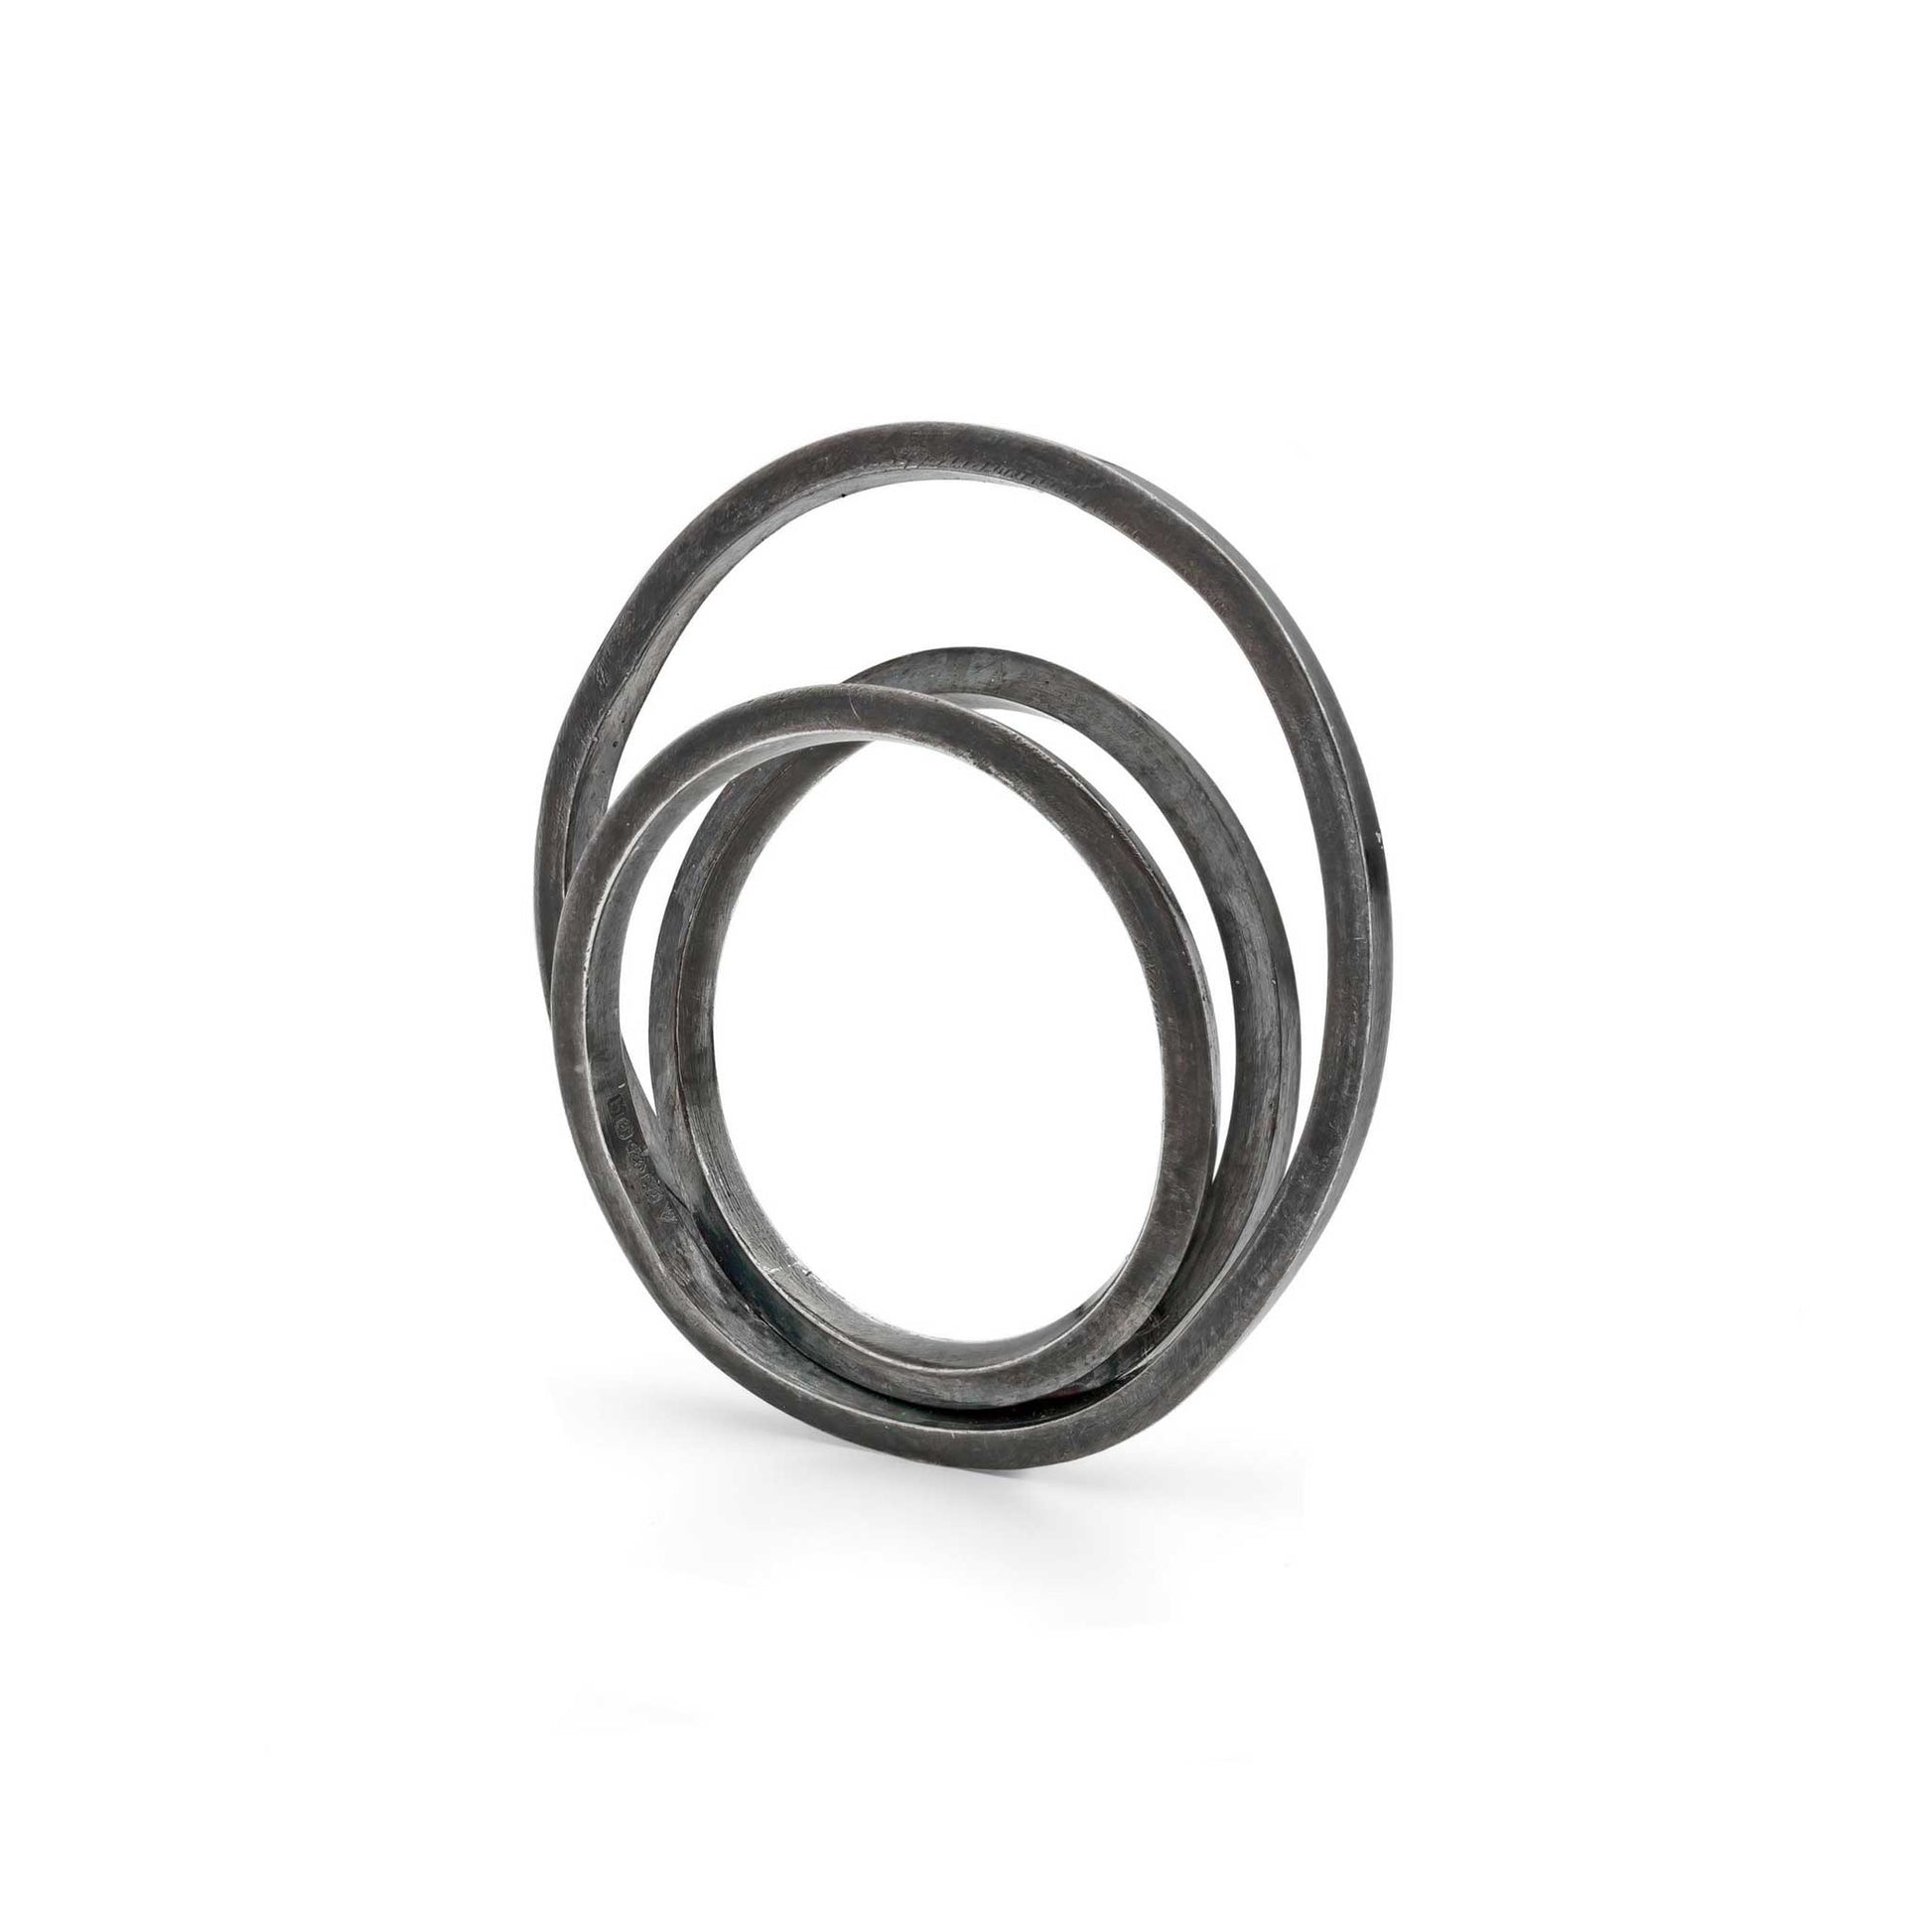 Oxidised Loop D Loop Ring 1.5mm